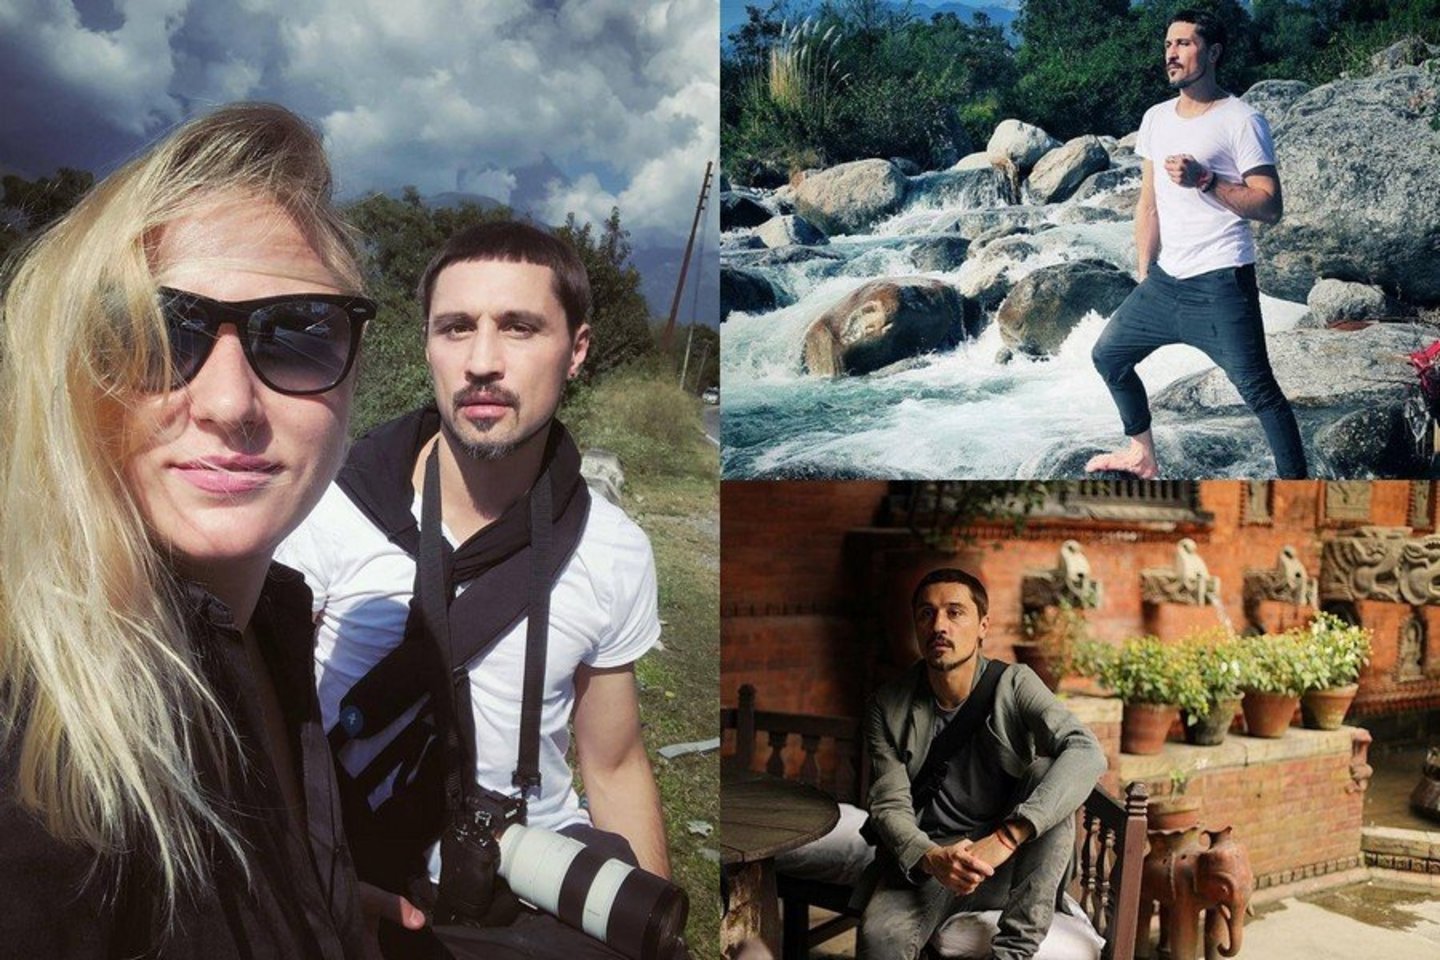 Po įspūdingos kelionės Dima Bilanas atrado gyvenimo džiaugsmą.<br> Instagramo nuotr.